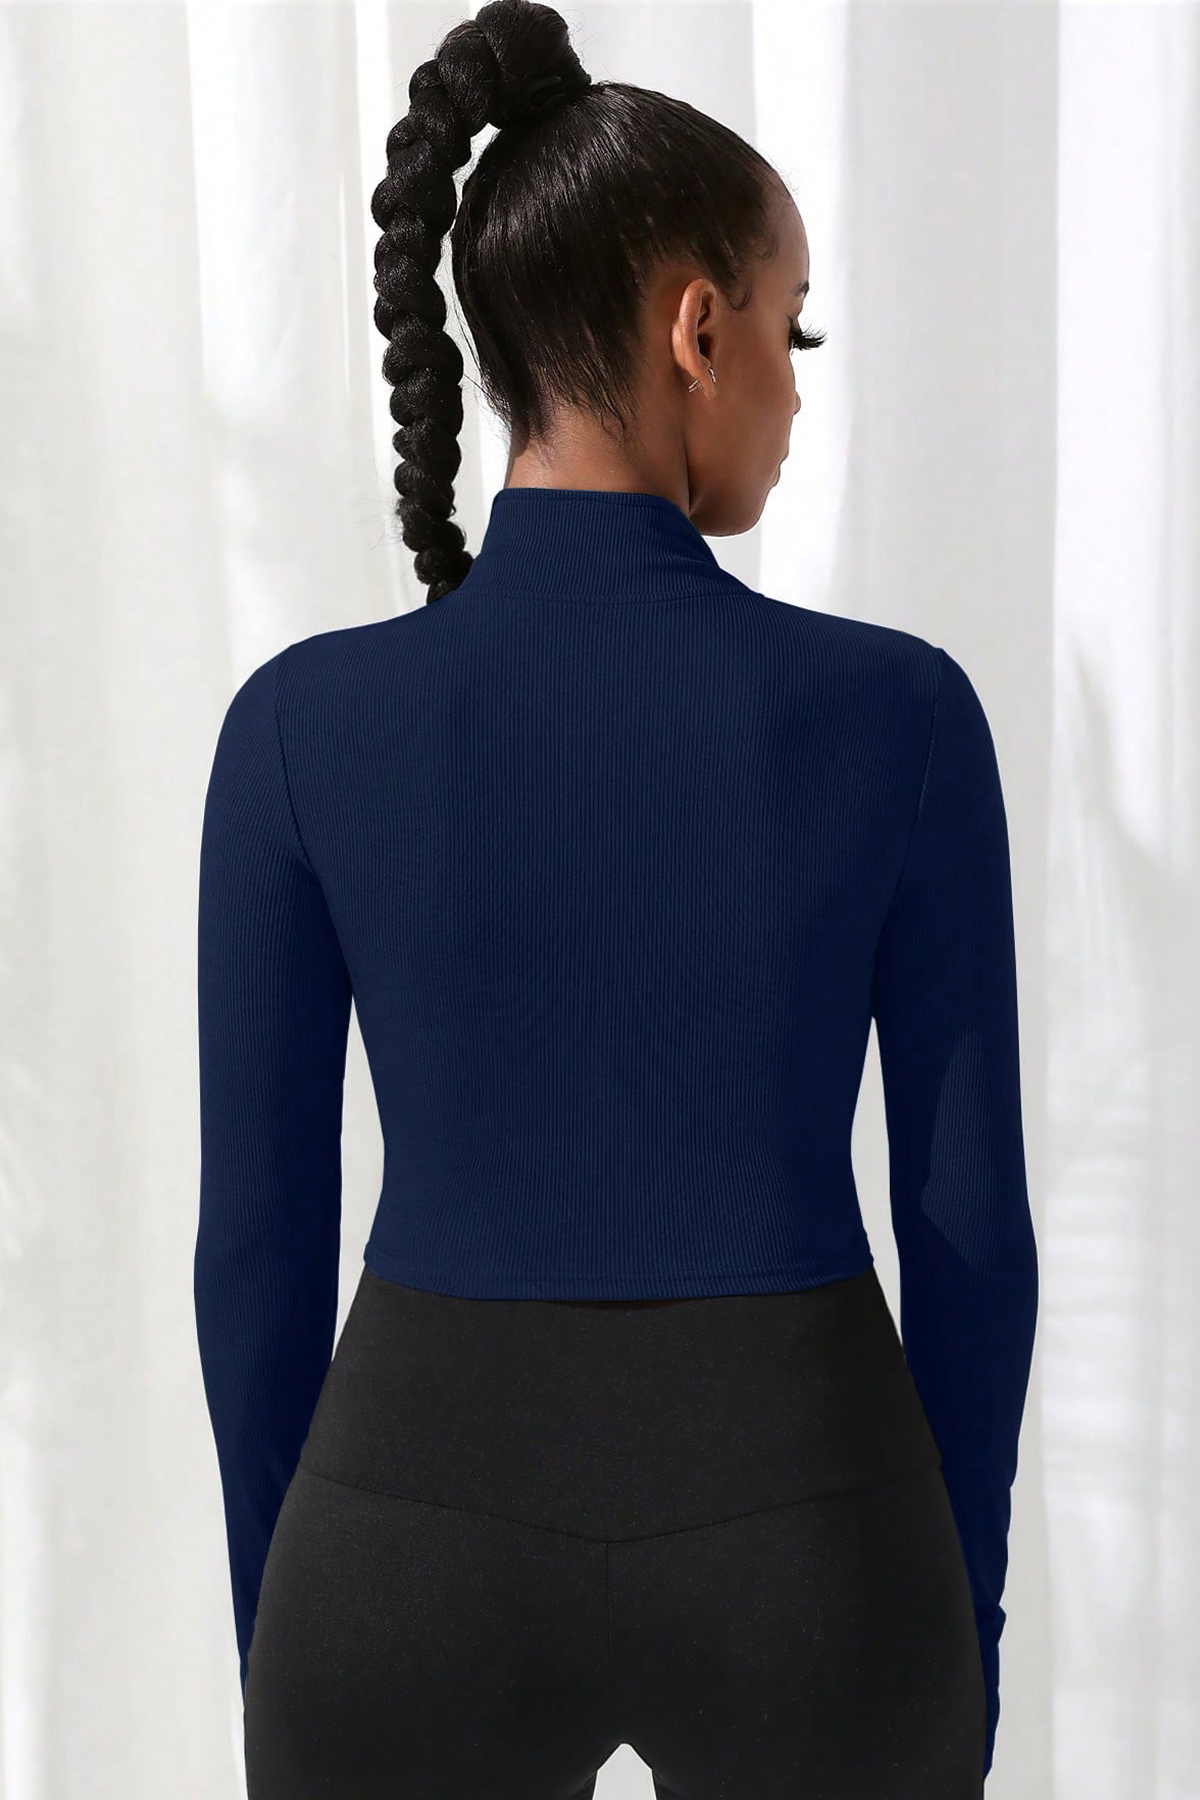 Kadın Lacivert Uzun Kol Fermuarlı Parmak Geçme Detaylı Dik Yaka Crop Top Bluz